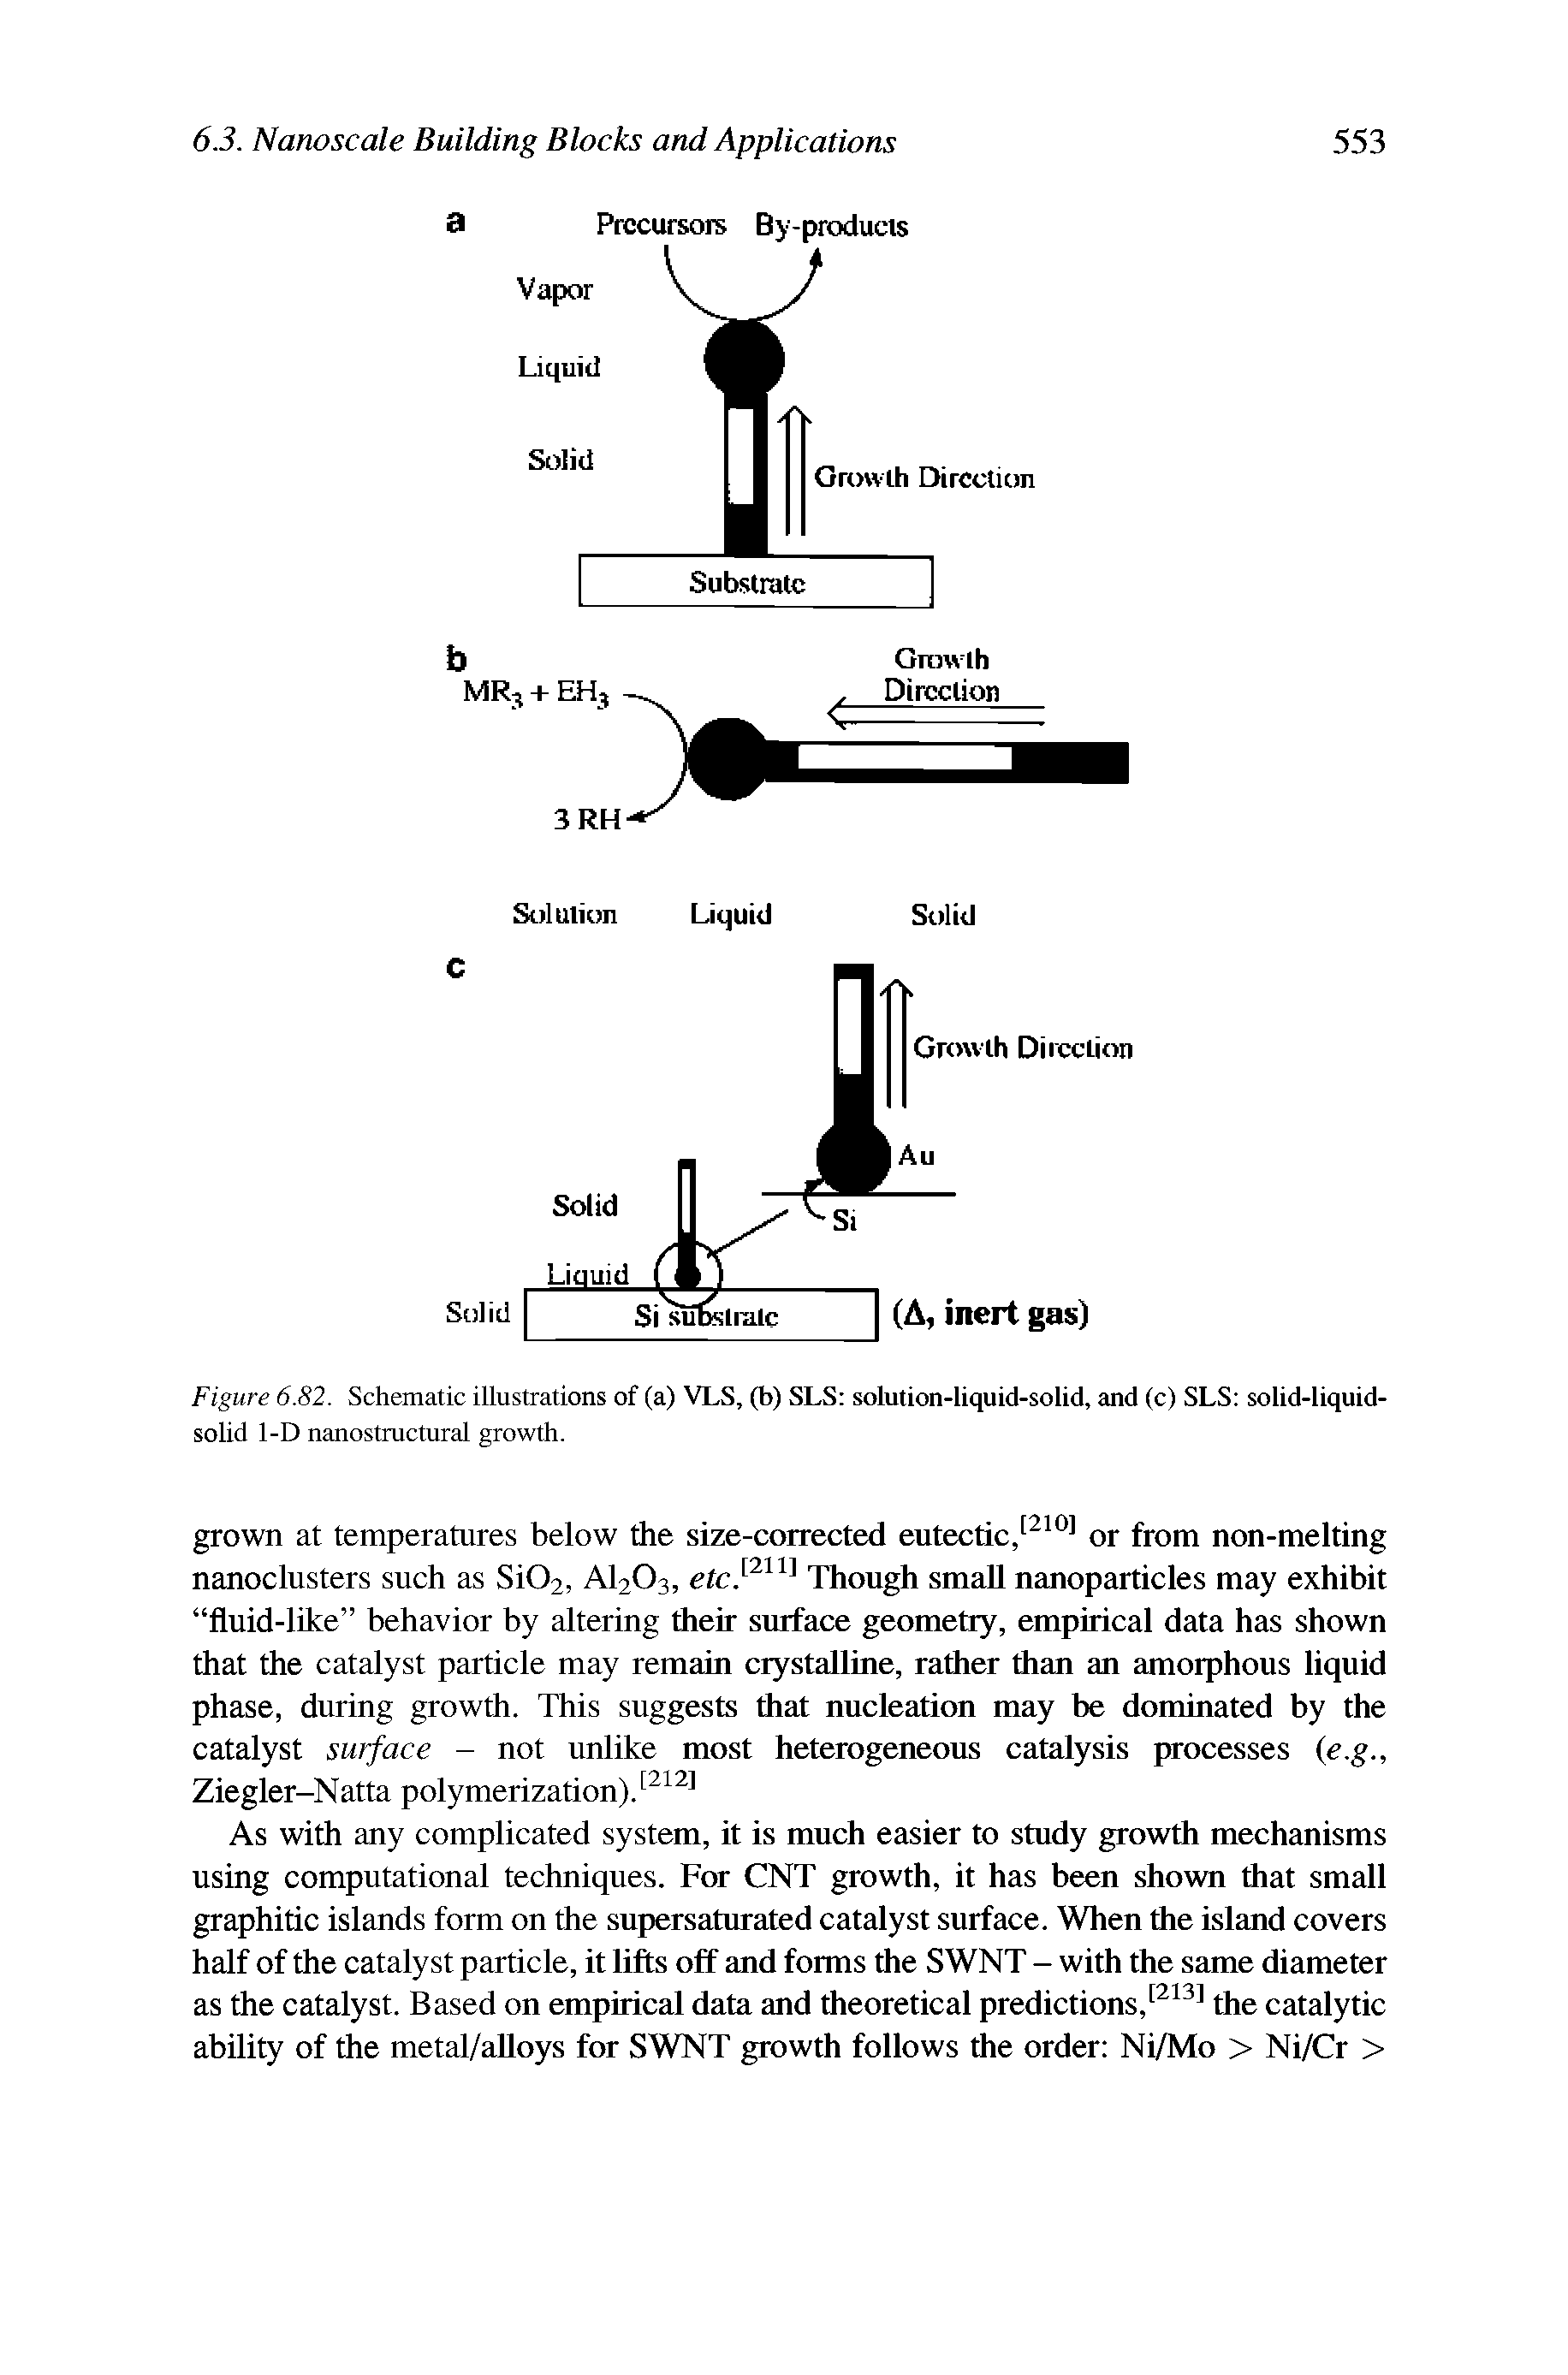 Figure 6.82. Schematic illustrations of (a) VLS, (b) SLS solution-liquid-solid, and (c) SLS solid-liquid-solid 1-D nanostmctural growth.